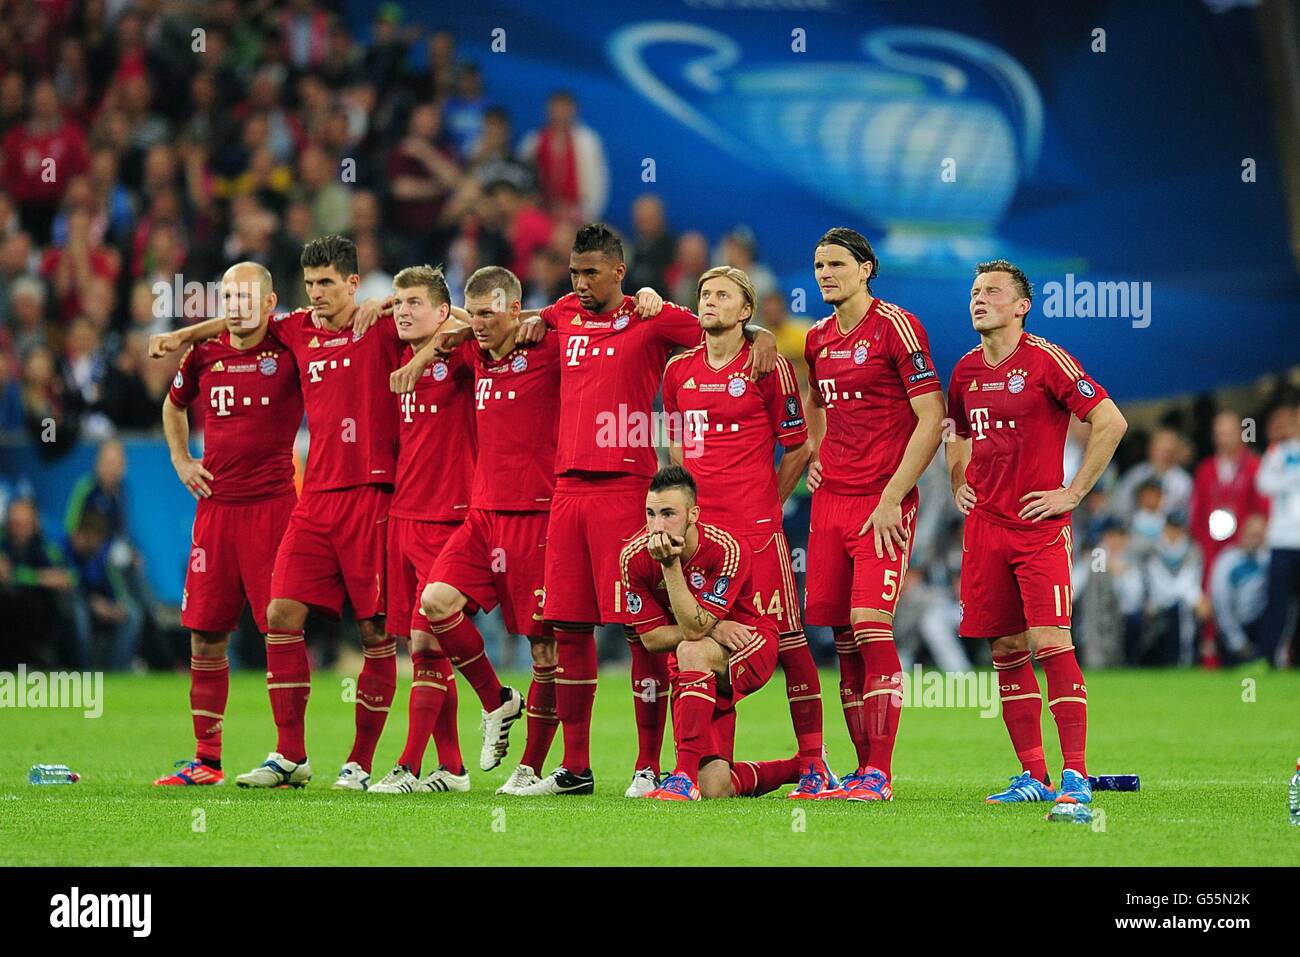 Fútbol - UEFA Champions League - Final - Bayern Munich contra Chelsea - Allianz Arena. El equipo del Bayern Munich ve cómo se desarrolla el tiroteo de penaltis Foto de stock